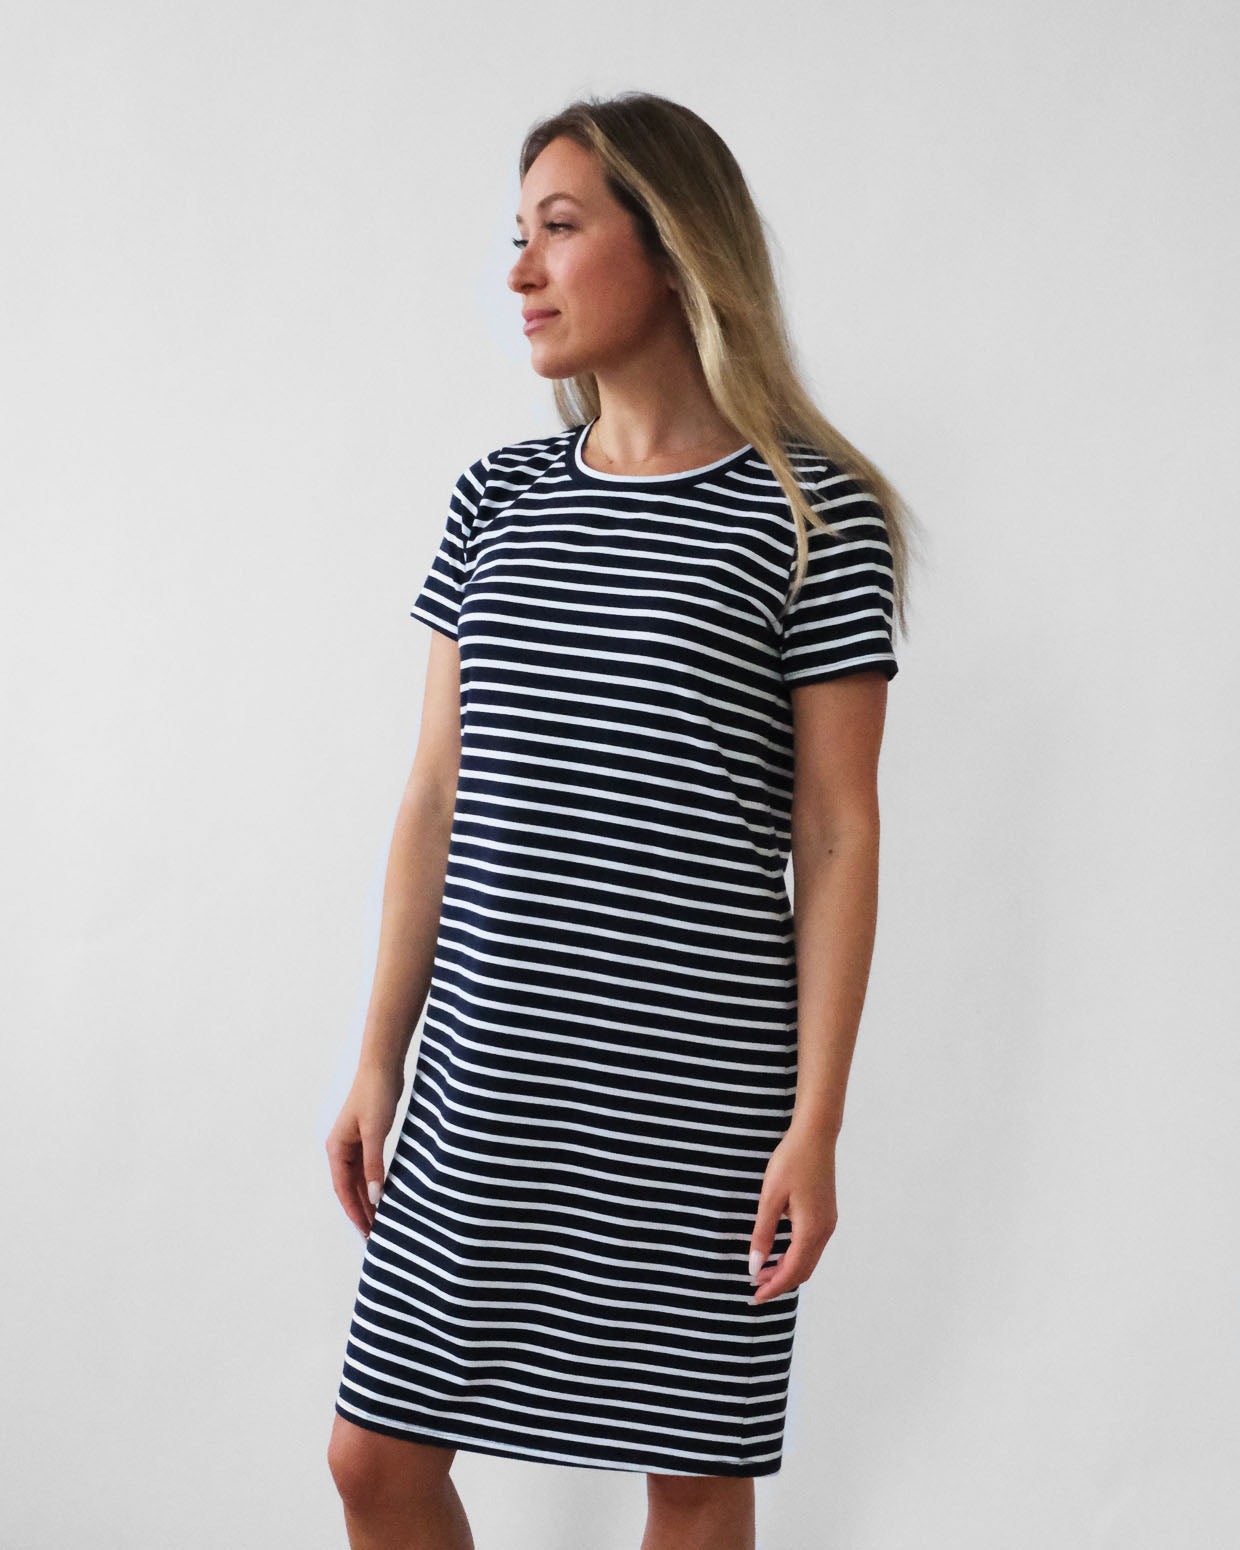 NINA stripe dress in Navy/White